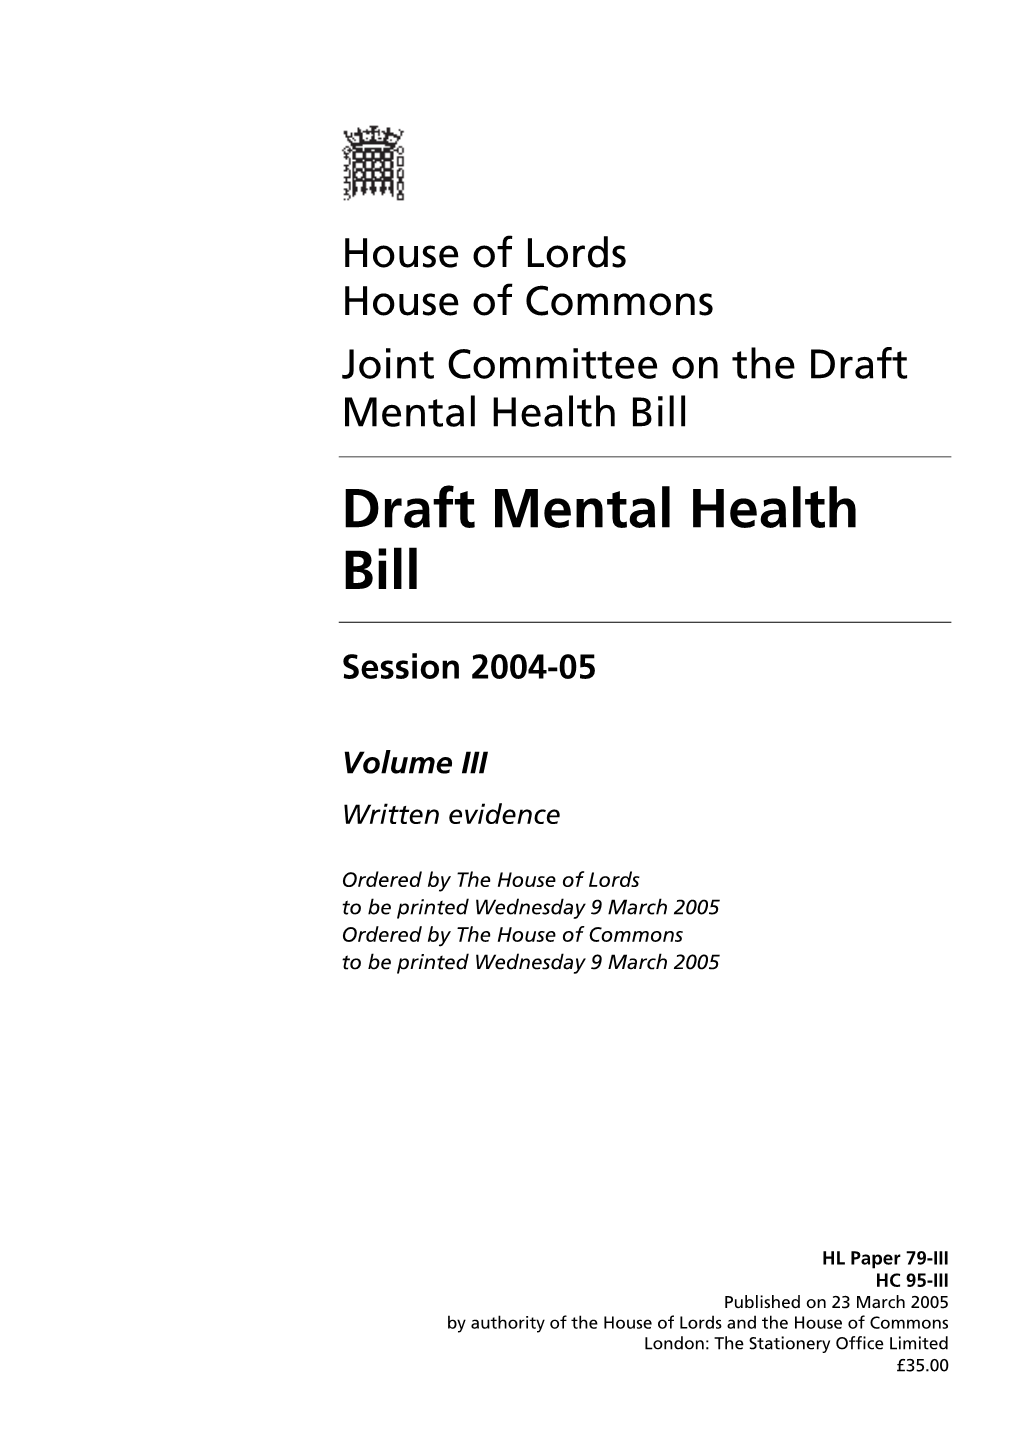 Draft Mental Health Bill Draft Mental Health Bill